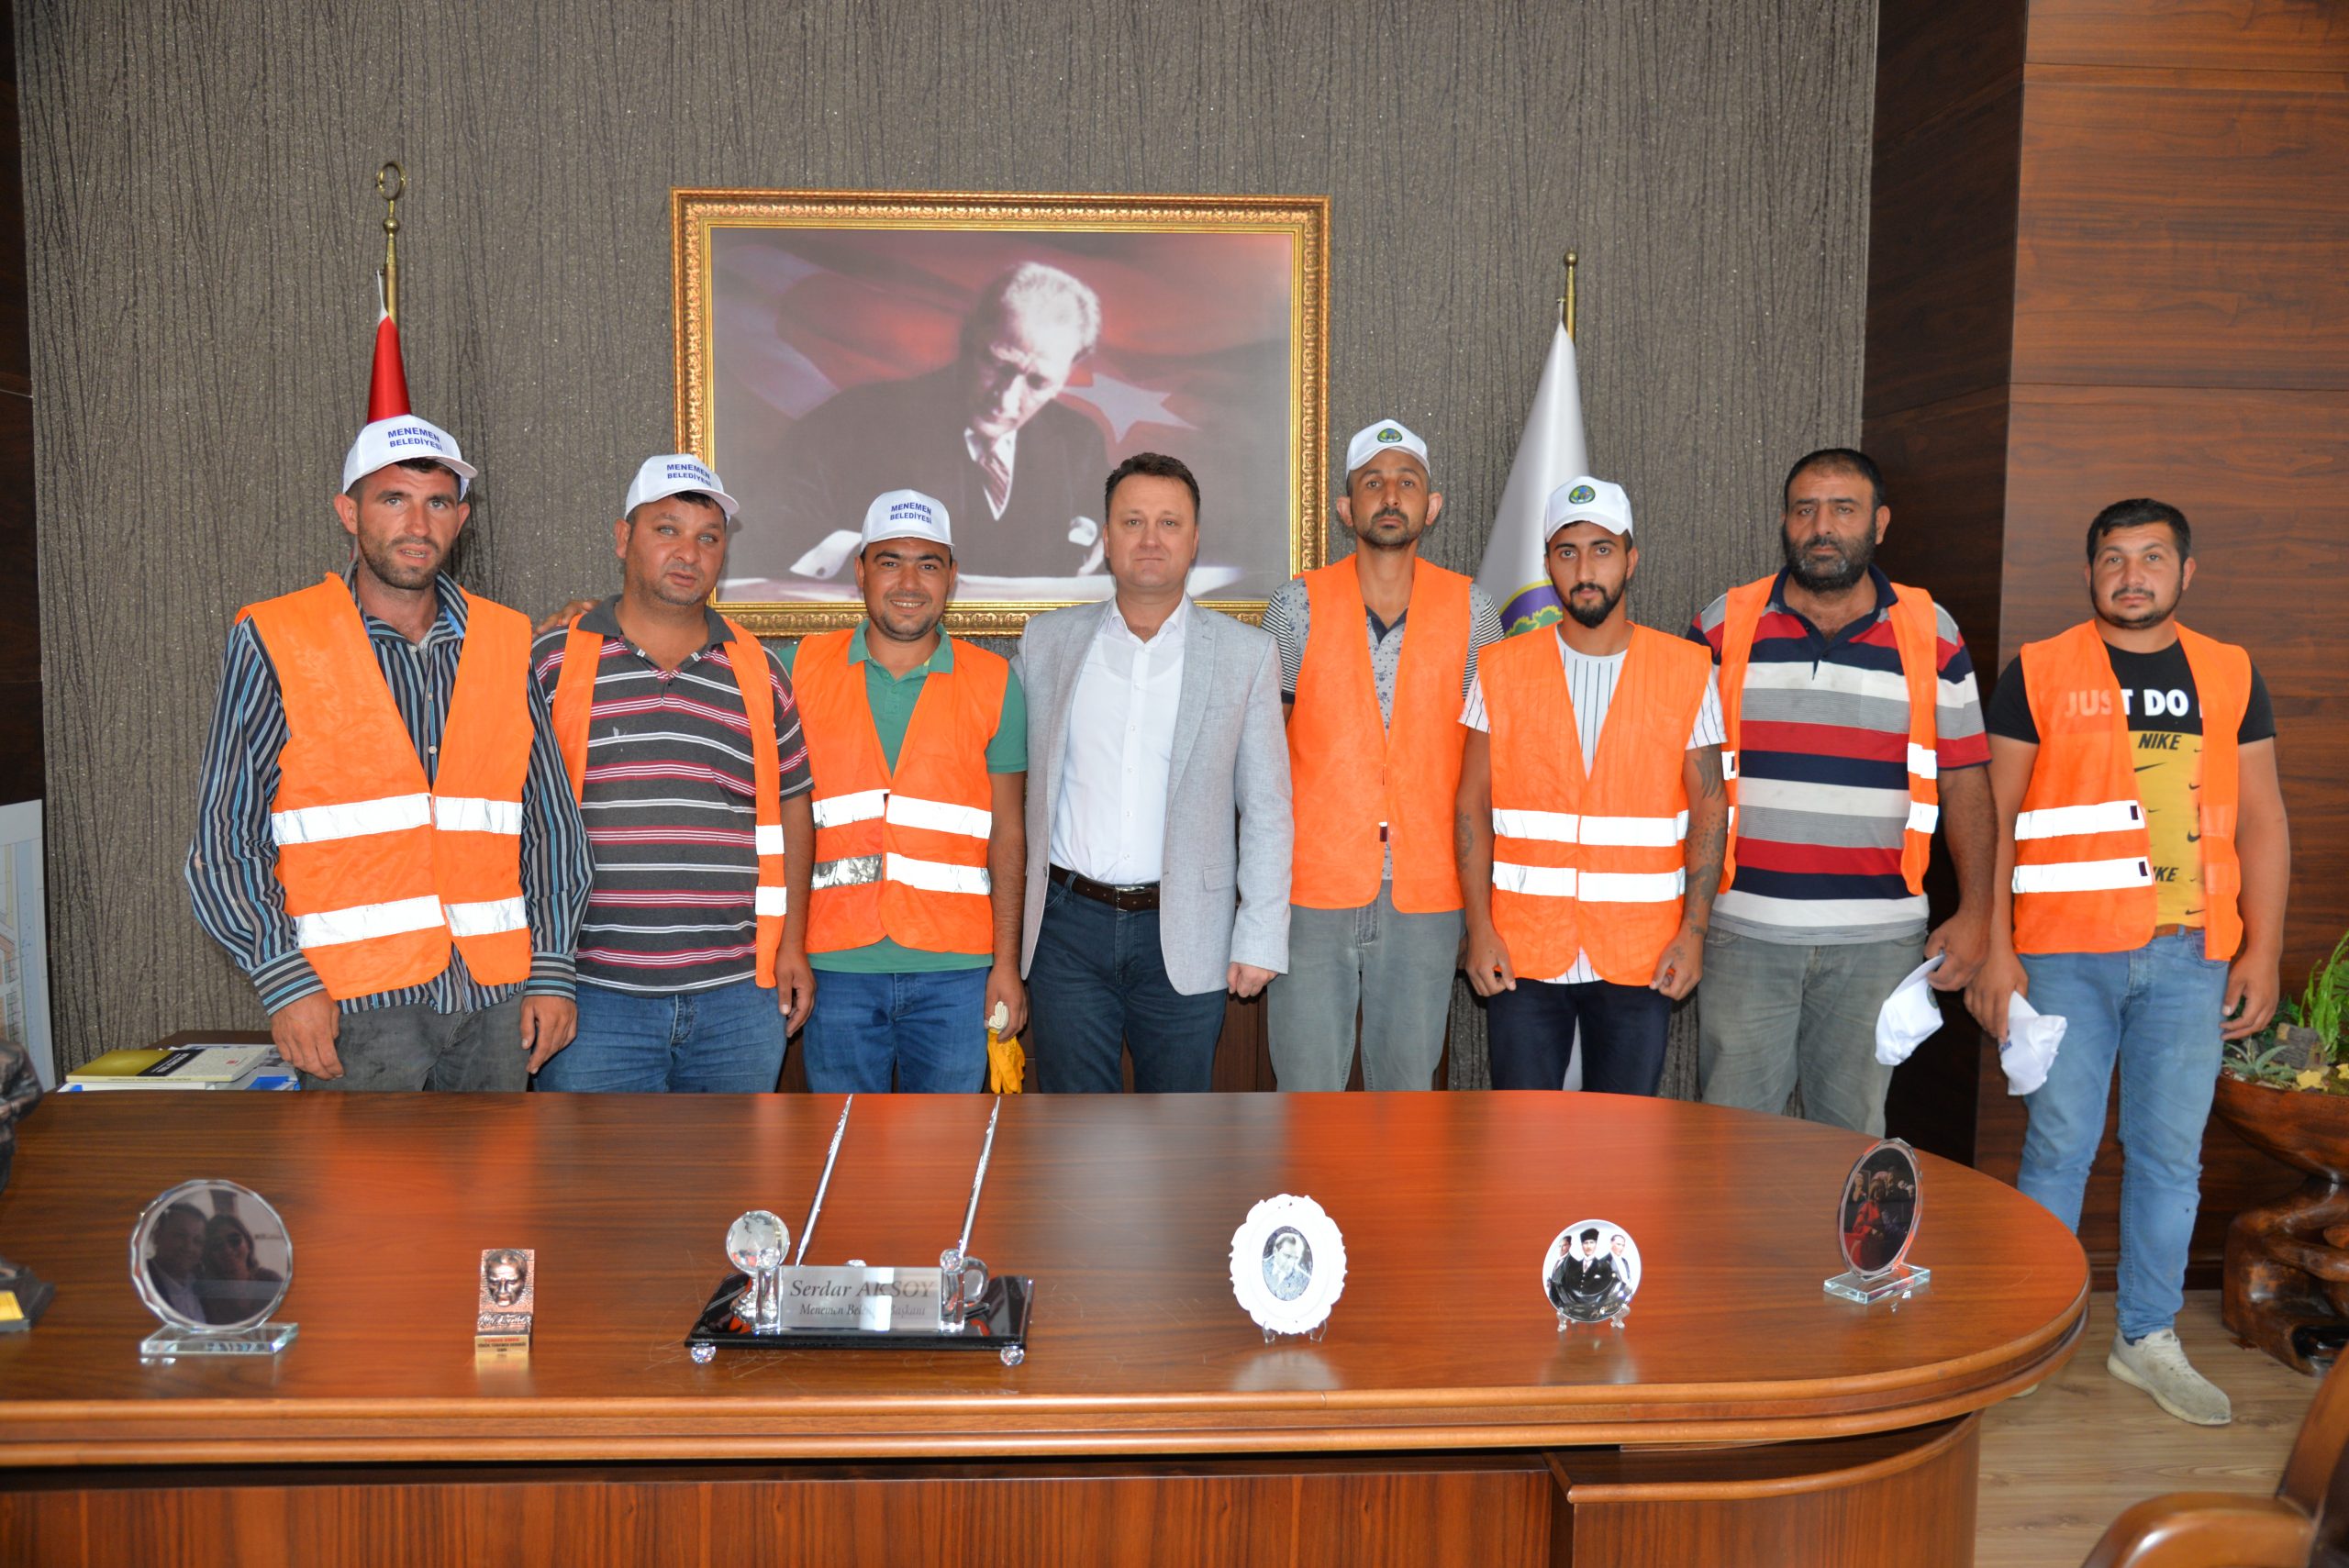 Menemen Belediye Başkanı Serdar Aksoy faytonculara sahip çıktı